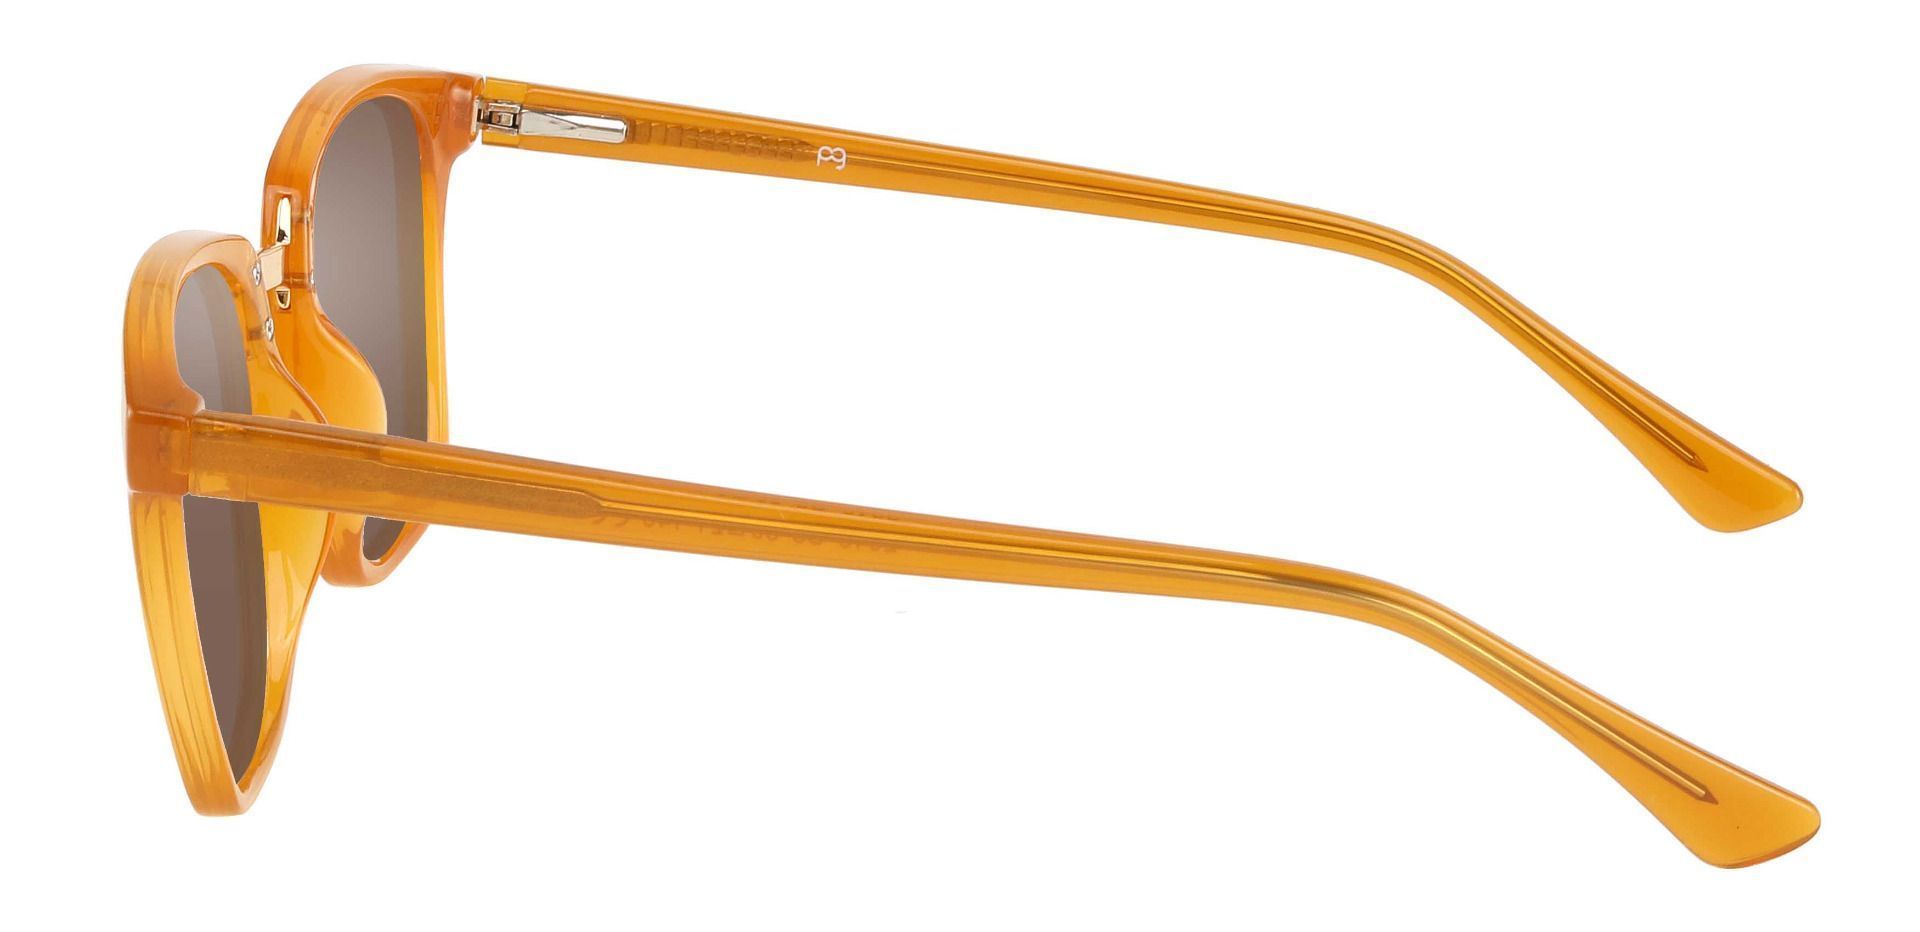 Delta Square Non-Rx Sunglasses - Orange Frame With Brown Lenses